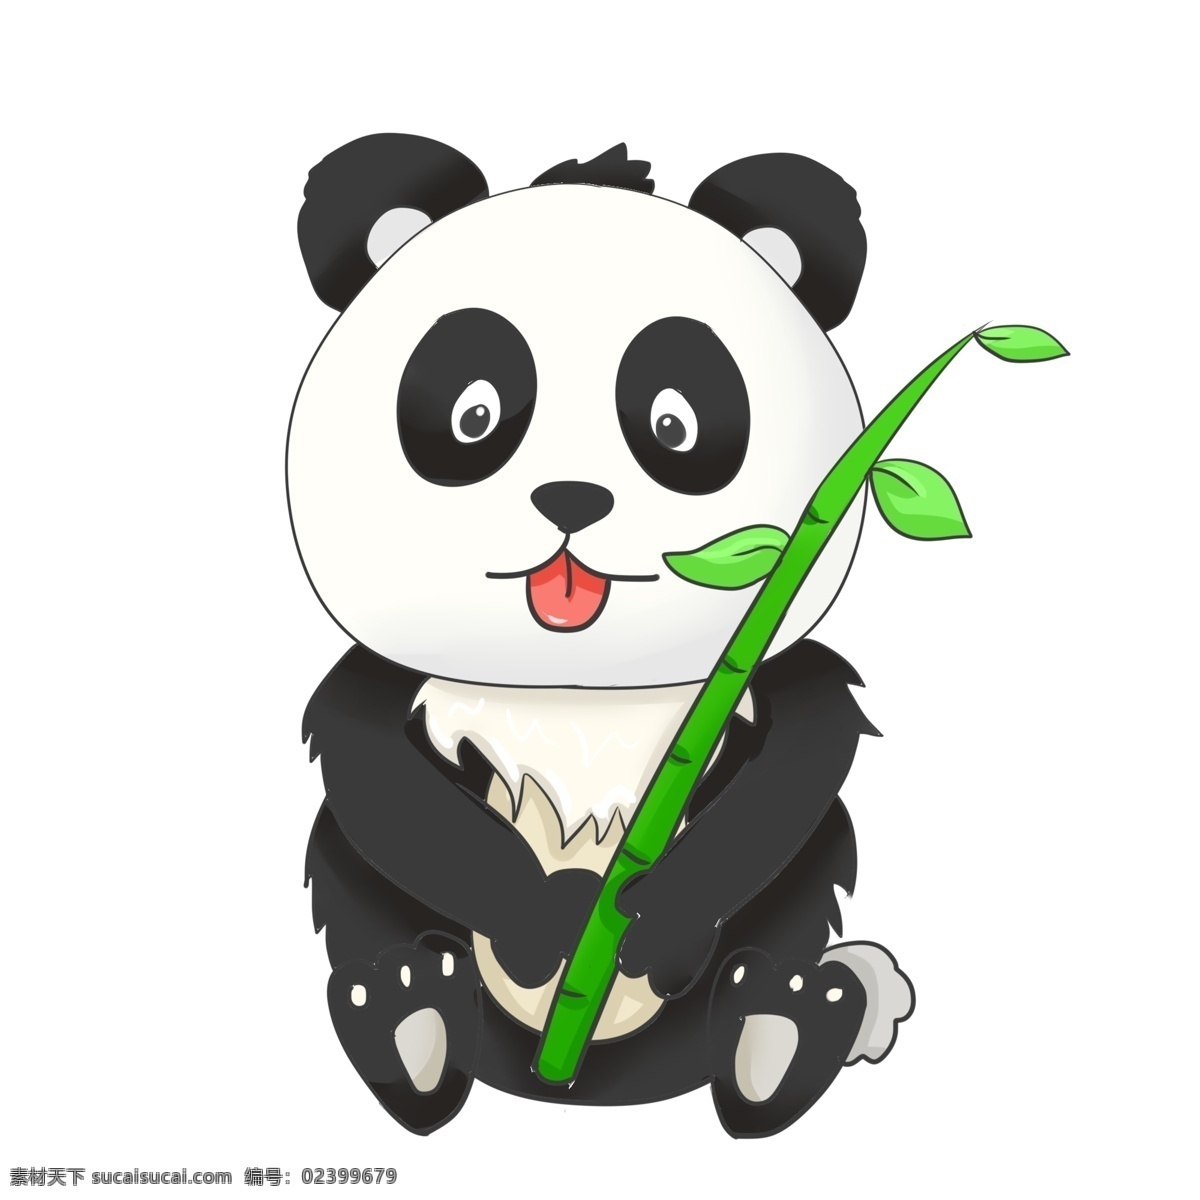 可爱 熊猫 吃 竹子 大熊猫 国宝 动物 绿色竹子 可爱的熊猫 吃竹子的熊猫 国宝大熊猫